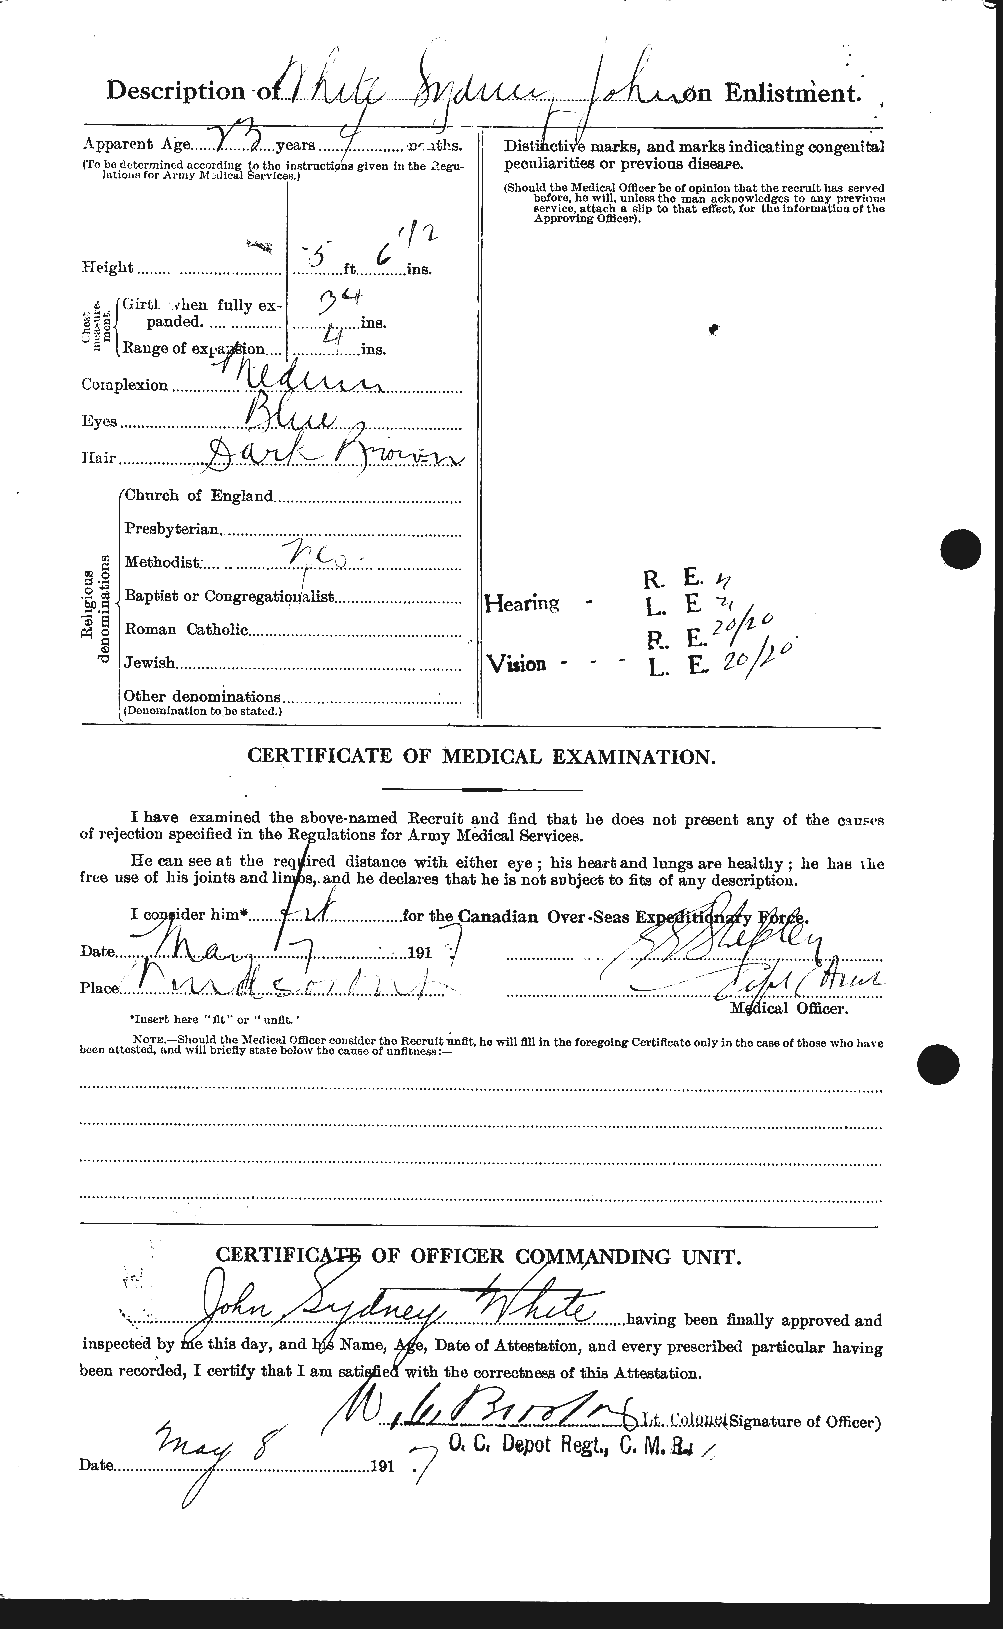 Dossiers du Personnel de la Première Guerre mondiale - CEC 673540b